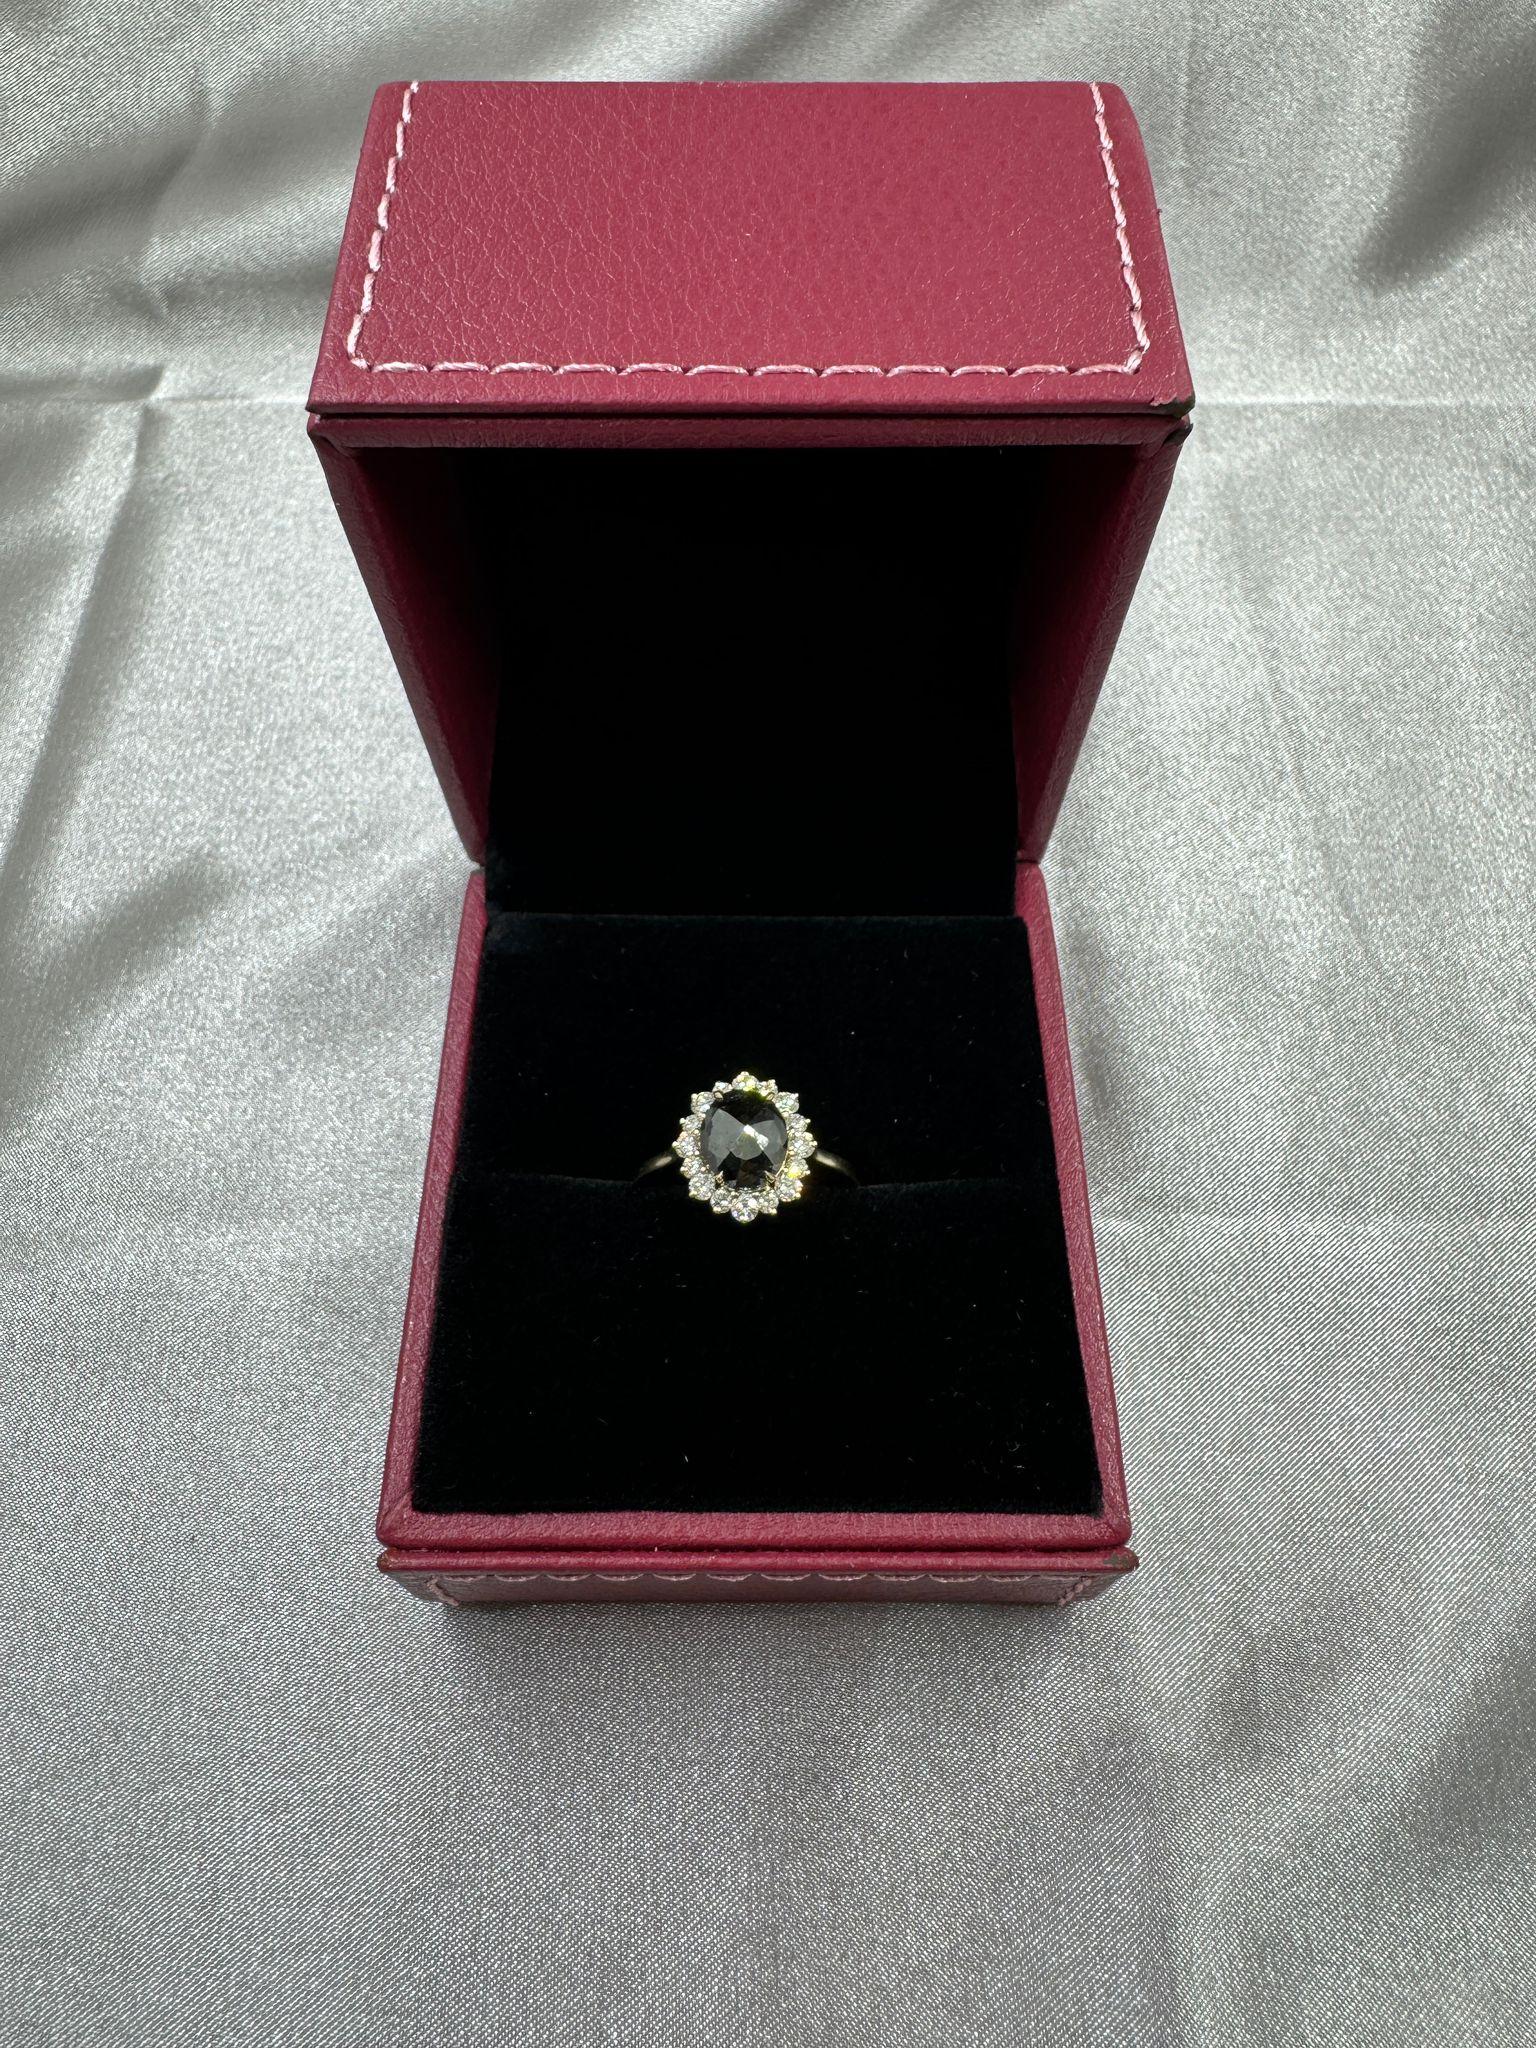 IGI CERTIFIED Vintage 2.27 Carat Black Diamond Ring in 14 Karat Yellow Gold 2